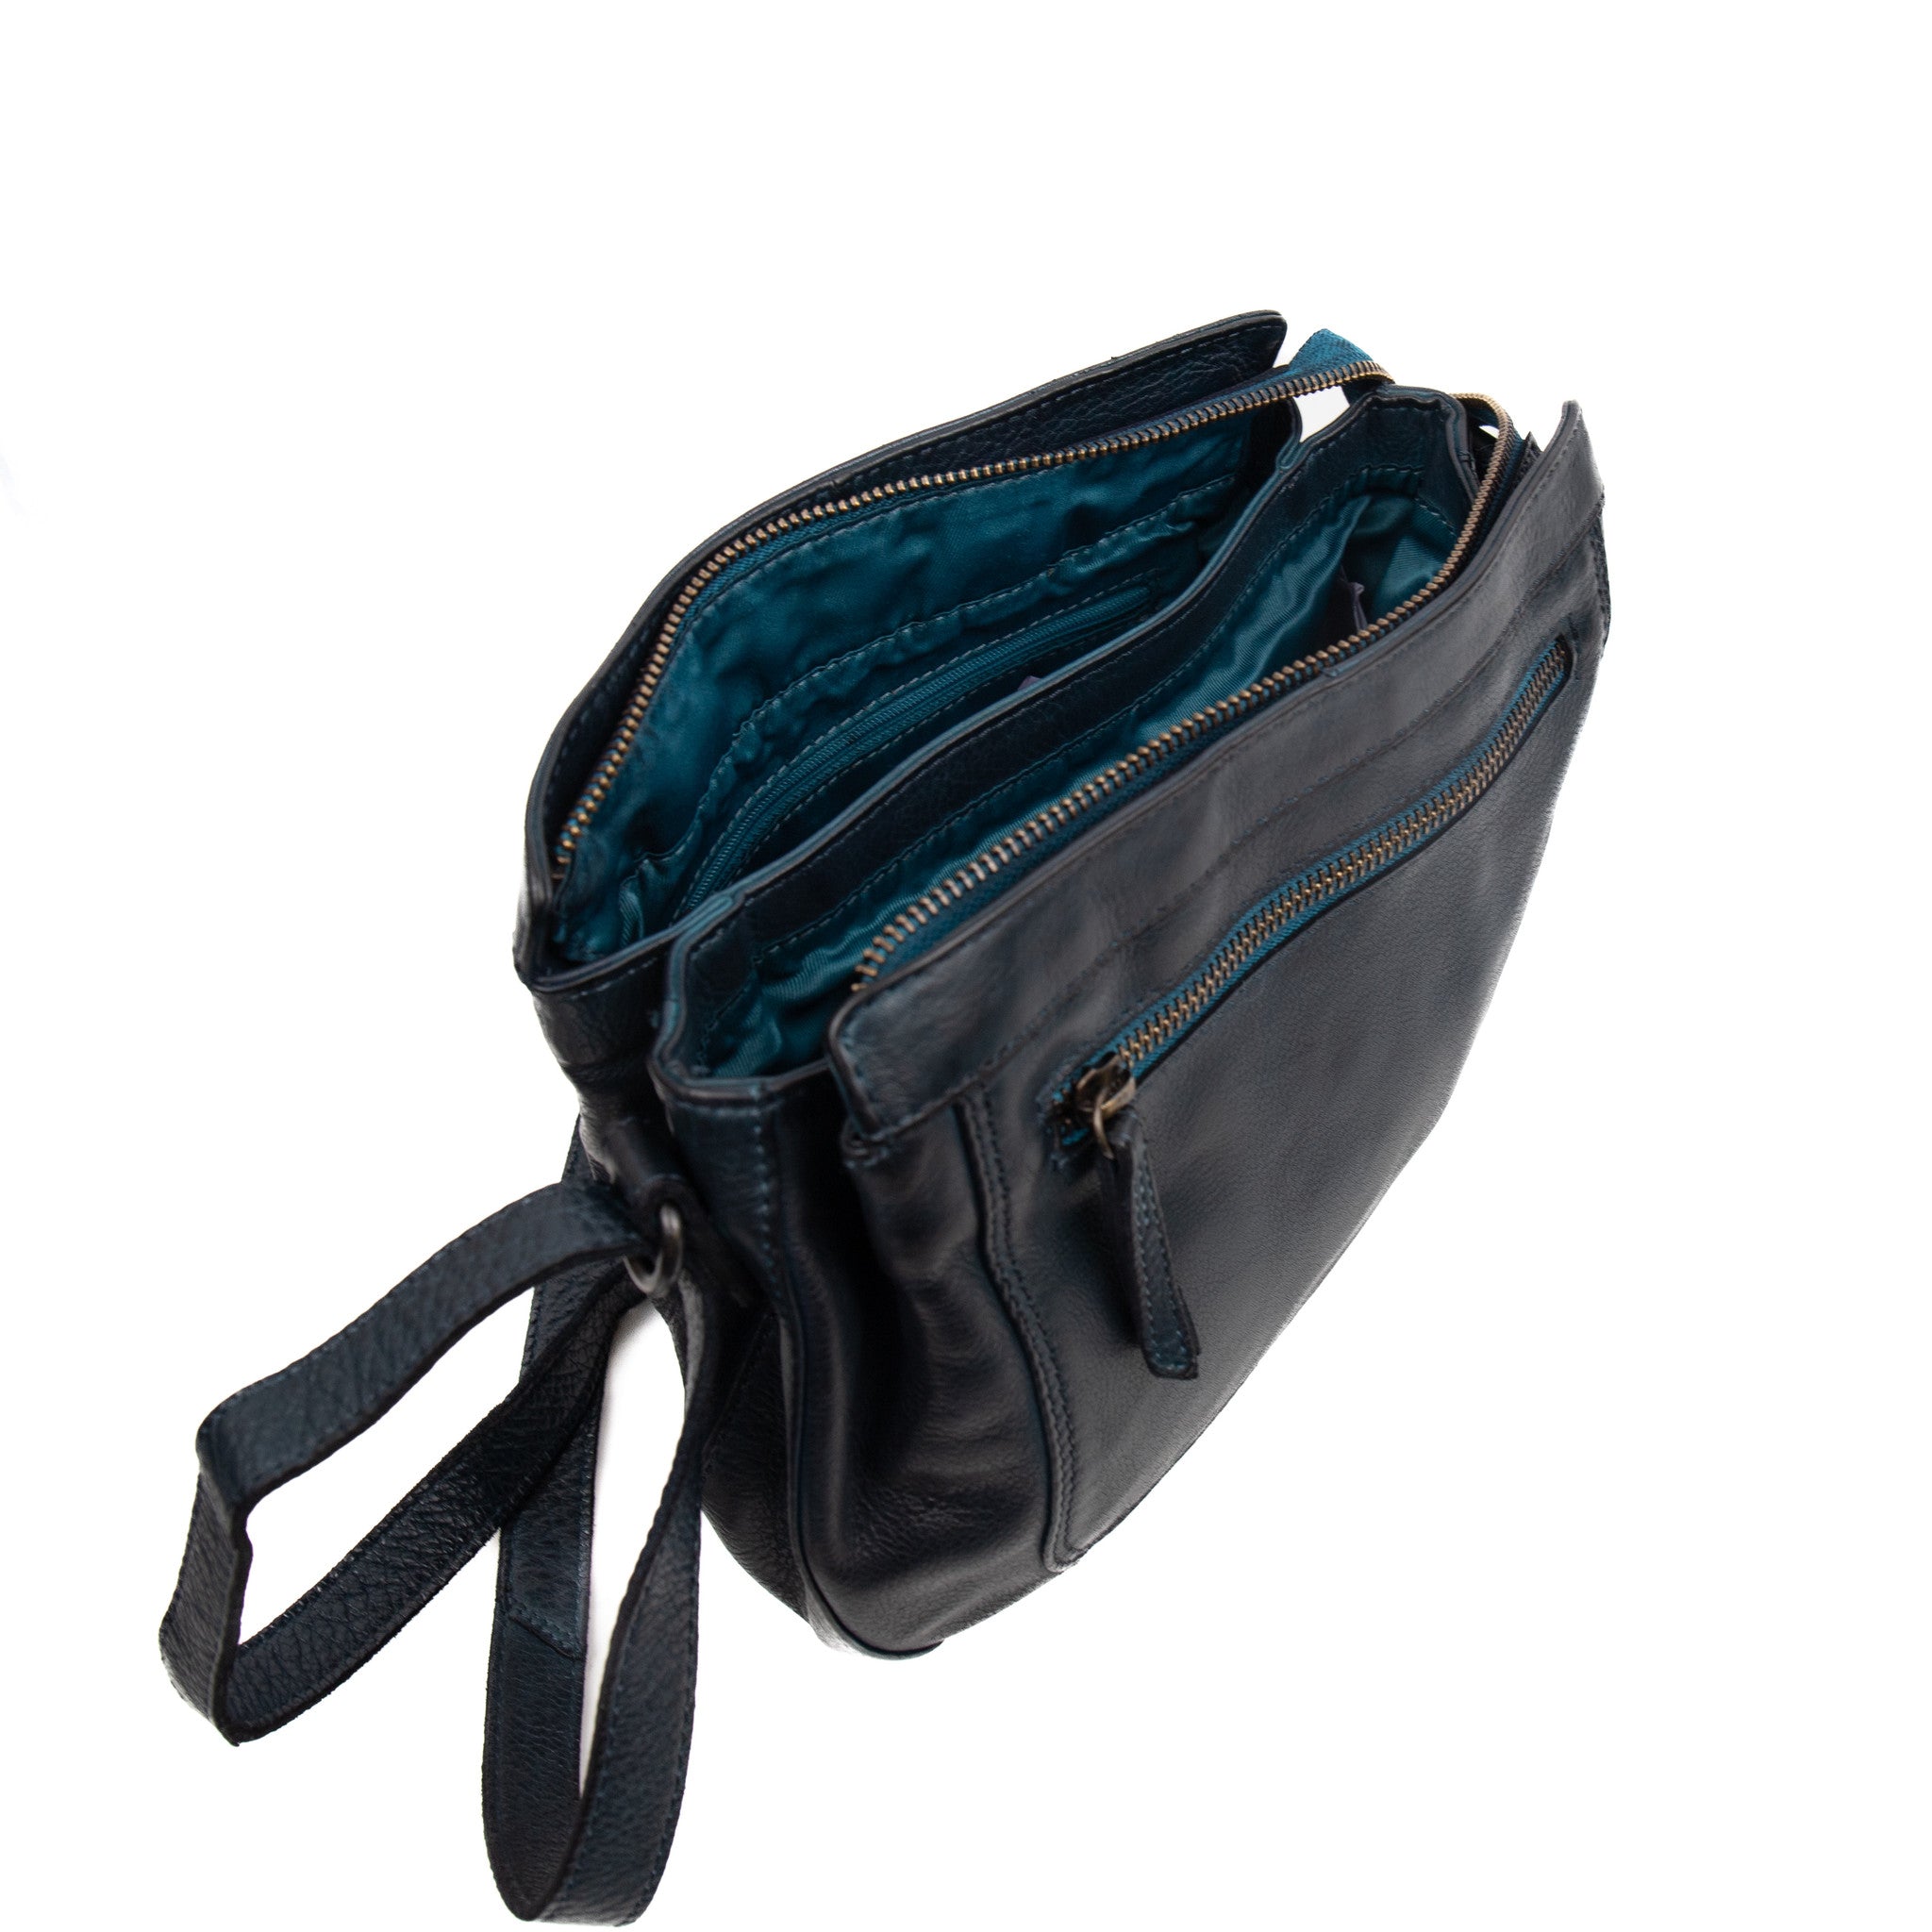 Shoulder bag 'Miley' navy - CL 41707